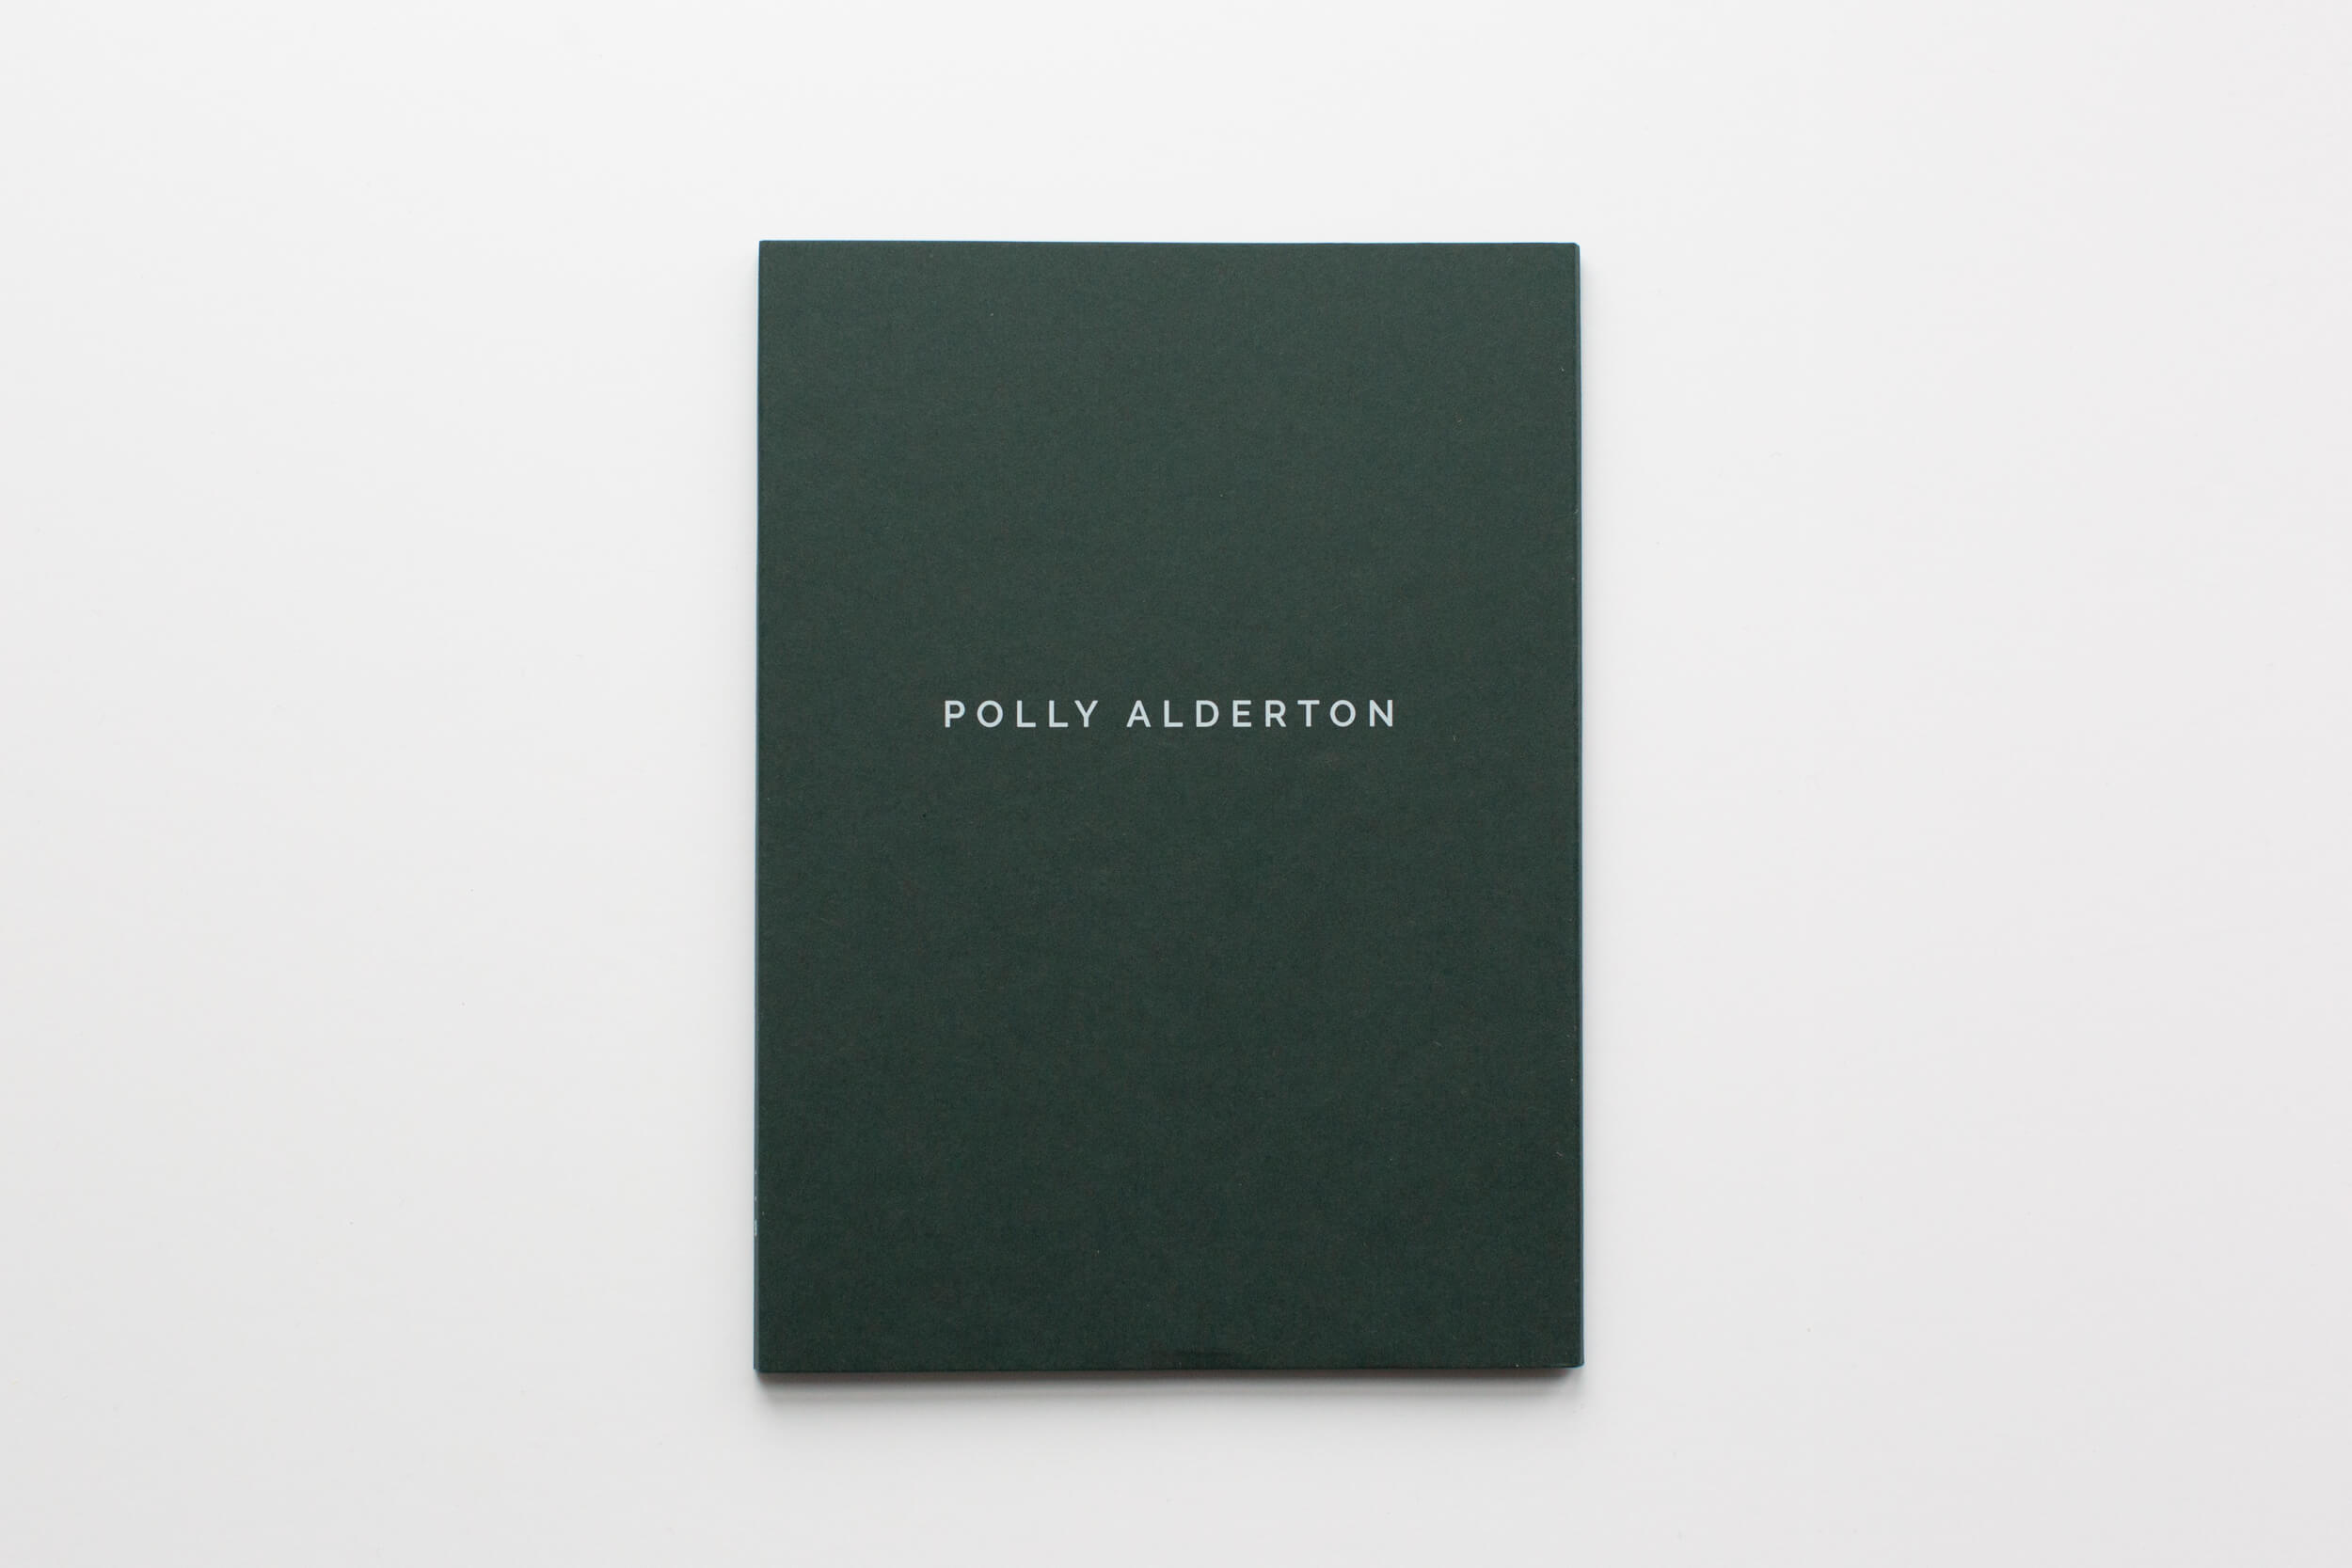 Polly Alderton